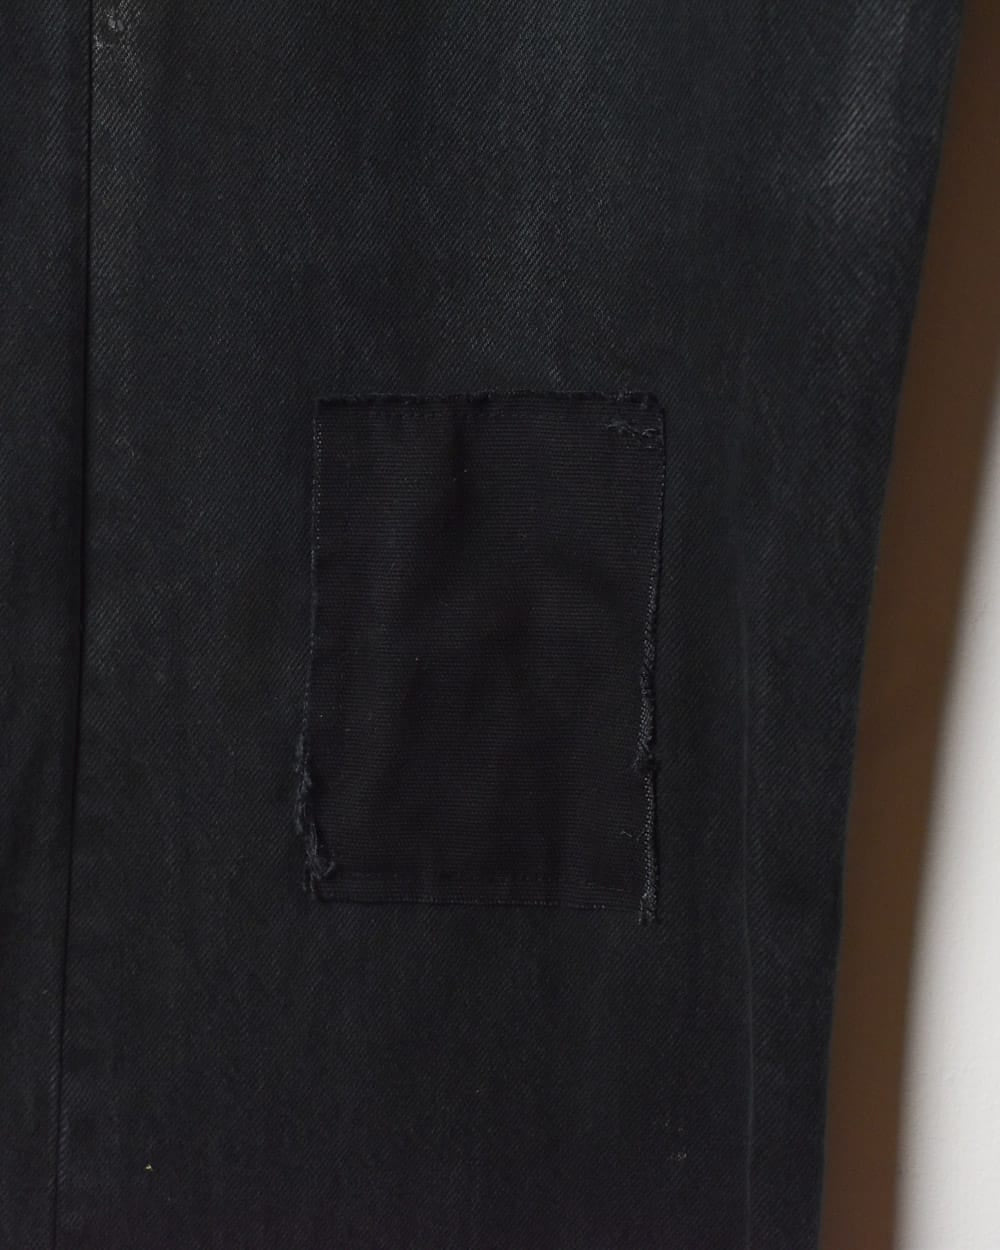 Black Levi's Patched 501 Jeans - W36 L34